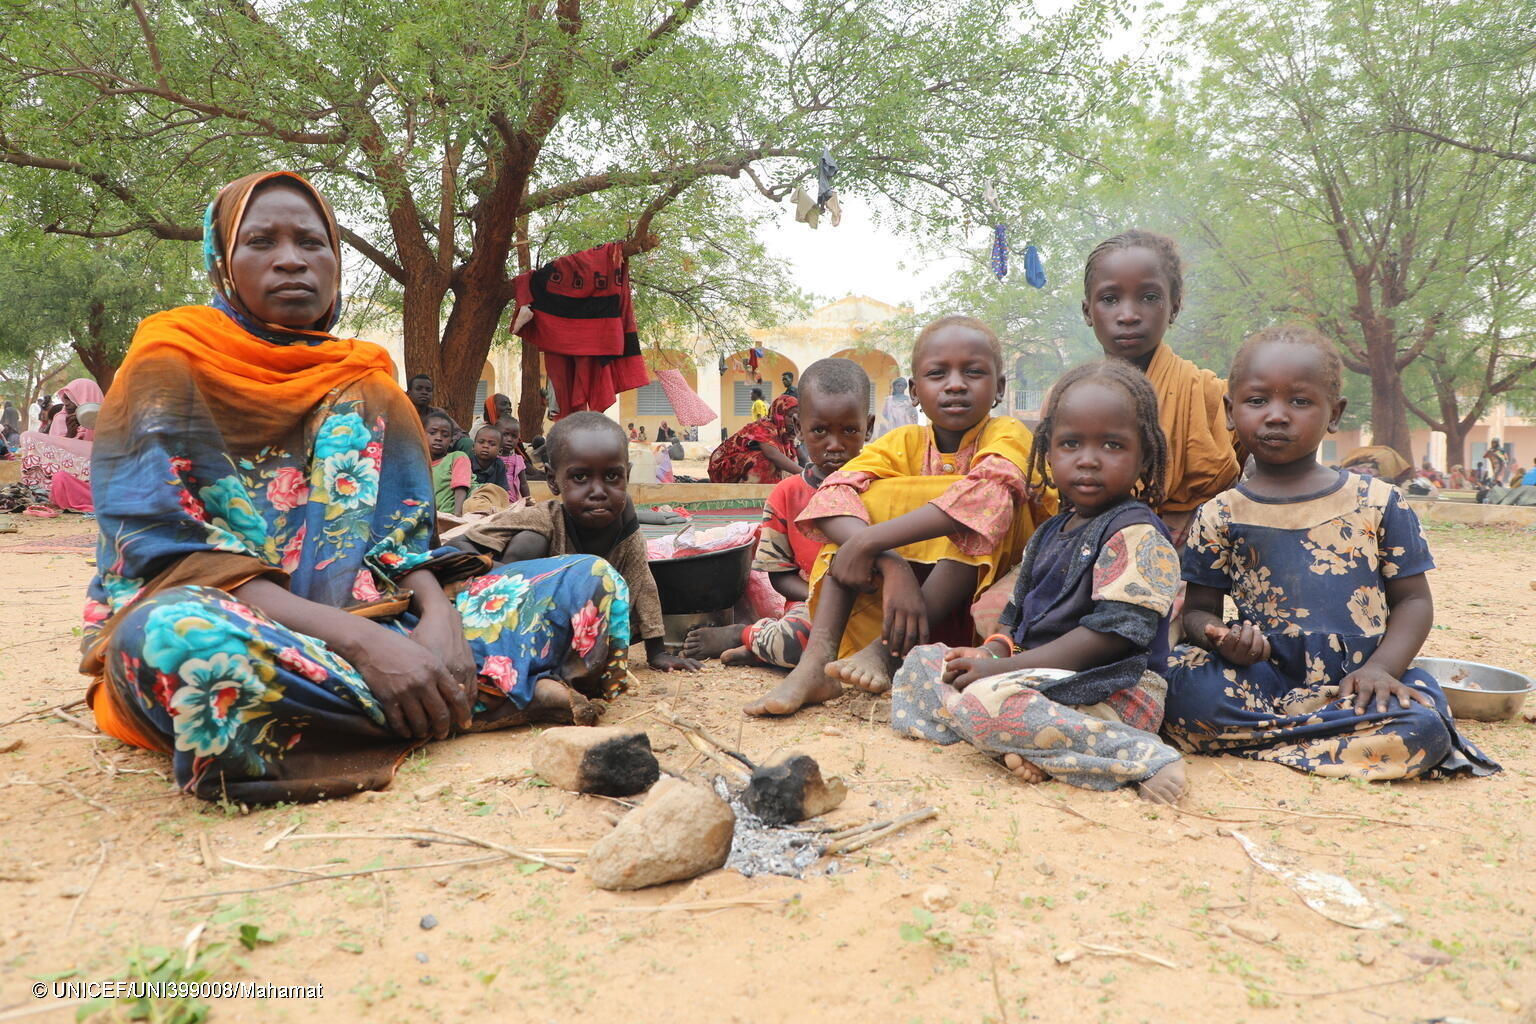 戦闘から逃れるため、スーダン・西ダルフール州の自宅から避難している途中で、6人の子どもたちとはぐれてしまった母親と7歳のイスラちゃん(左2人目)。同じく、避難途中に家族とはぐれてしまった5人の子どもたちを連れて、チャドのアドレに到着し、木陰で休んでいる。(チャド、2023年6月17日撮影)